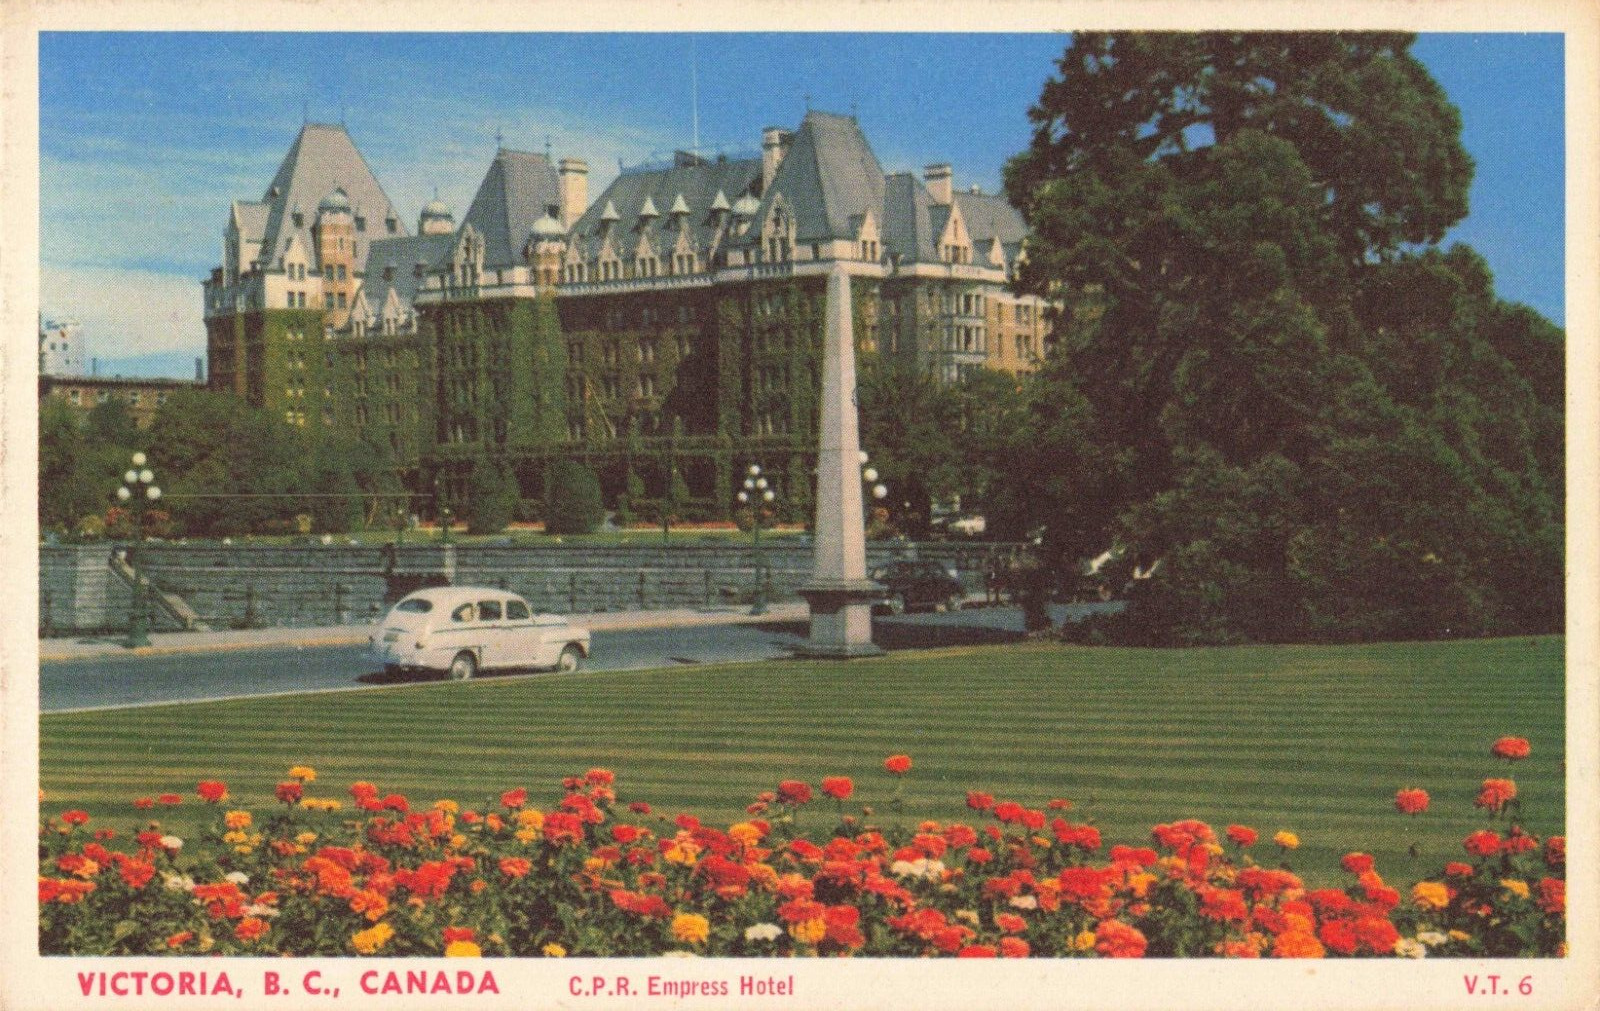 Victoria Canada, C.P.R. Empress Hotel, Old Car, Vintage Postcard